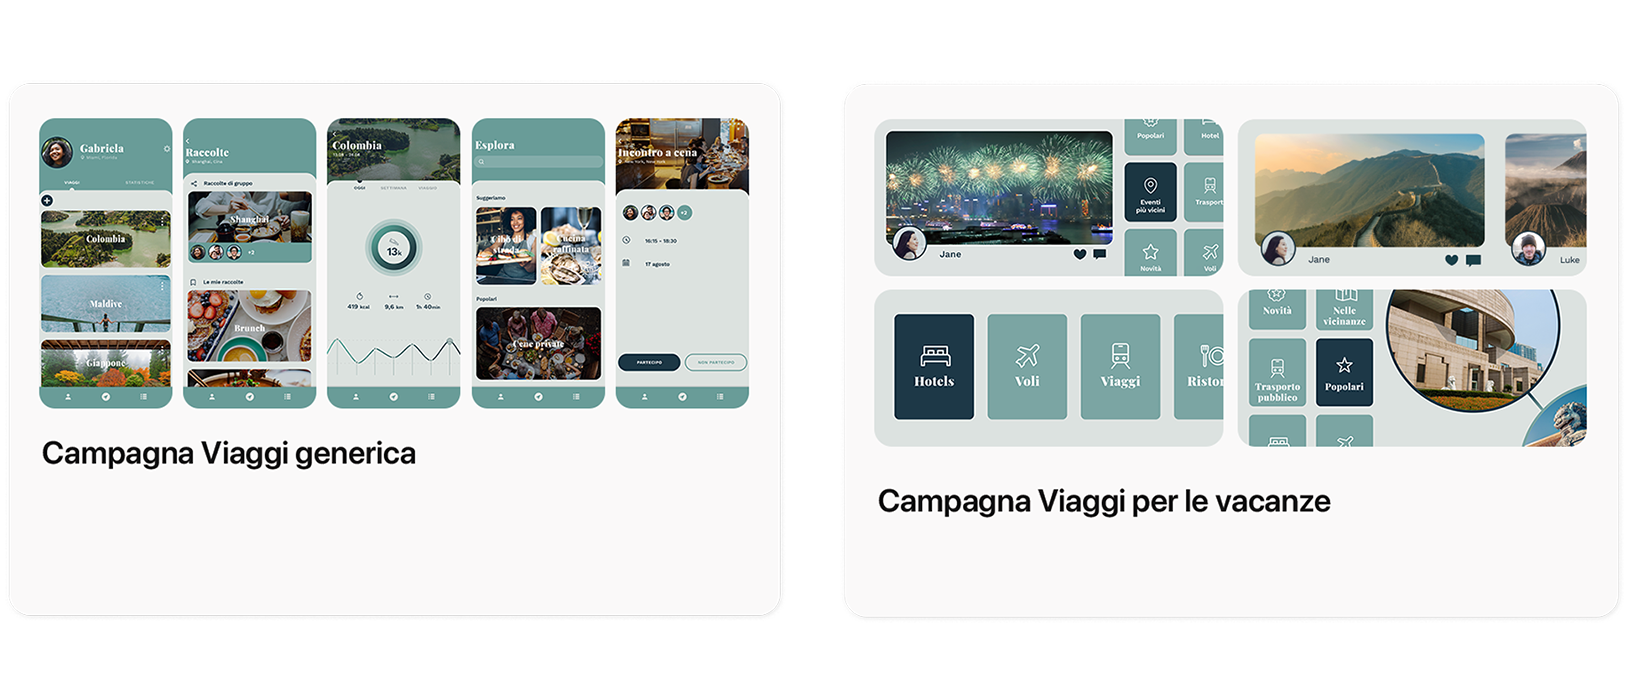 Due esempi di annunci per il pannello Oggi per un’app di esempio, TripTrek. A sinistra c’è una campagna Viaggi generica con immagini che offrono una panoramica dell’app. A destra c’è una campagna Viaggi per le vacanze che potrebbe essere pubblicata durante i periodi promozionali dell’anno.